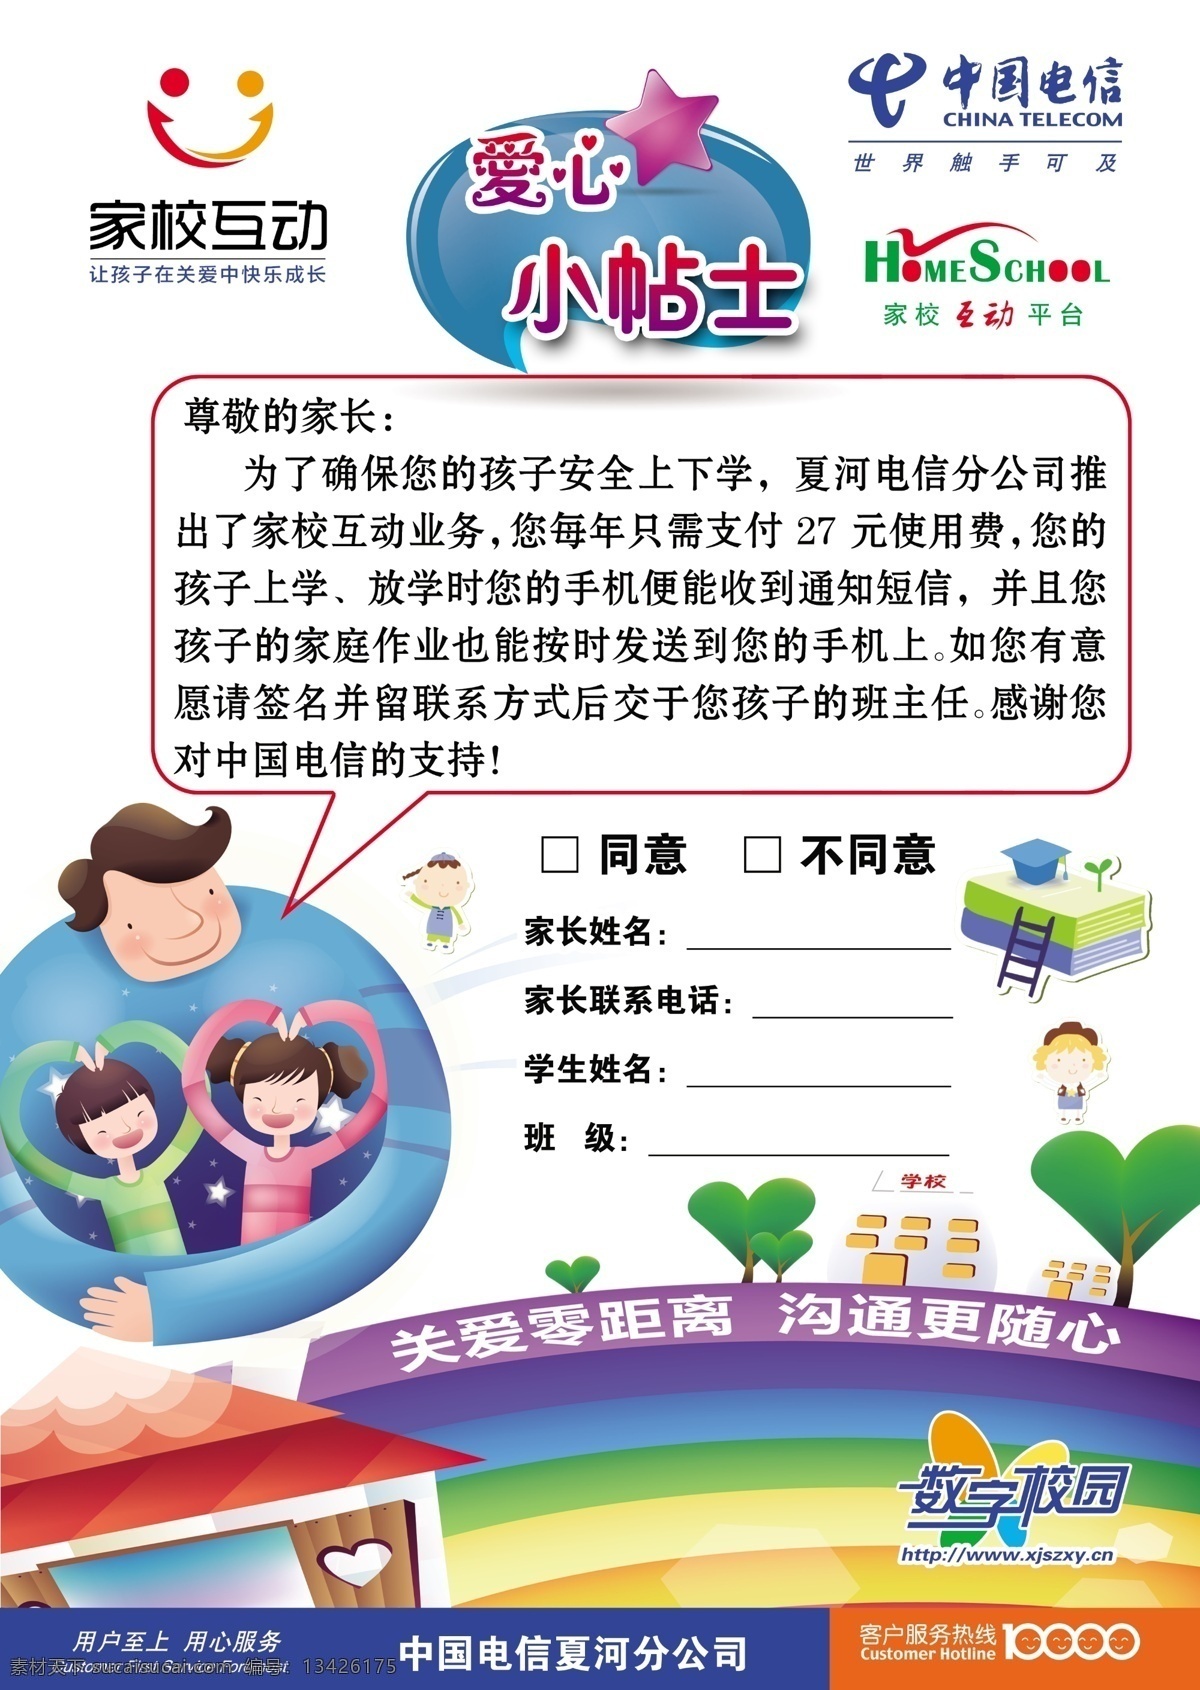 家 校 互动 dm宣传单 广告设计模板 卡通素材 源文件 中国电信 家校互动 爱心小贴士 校务通